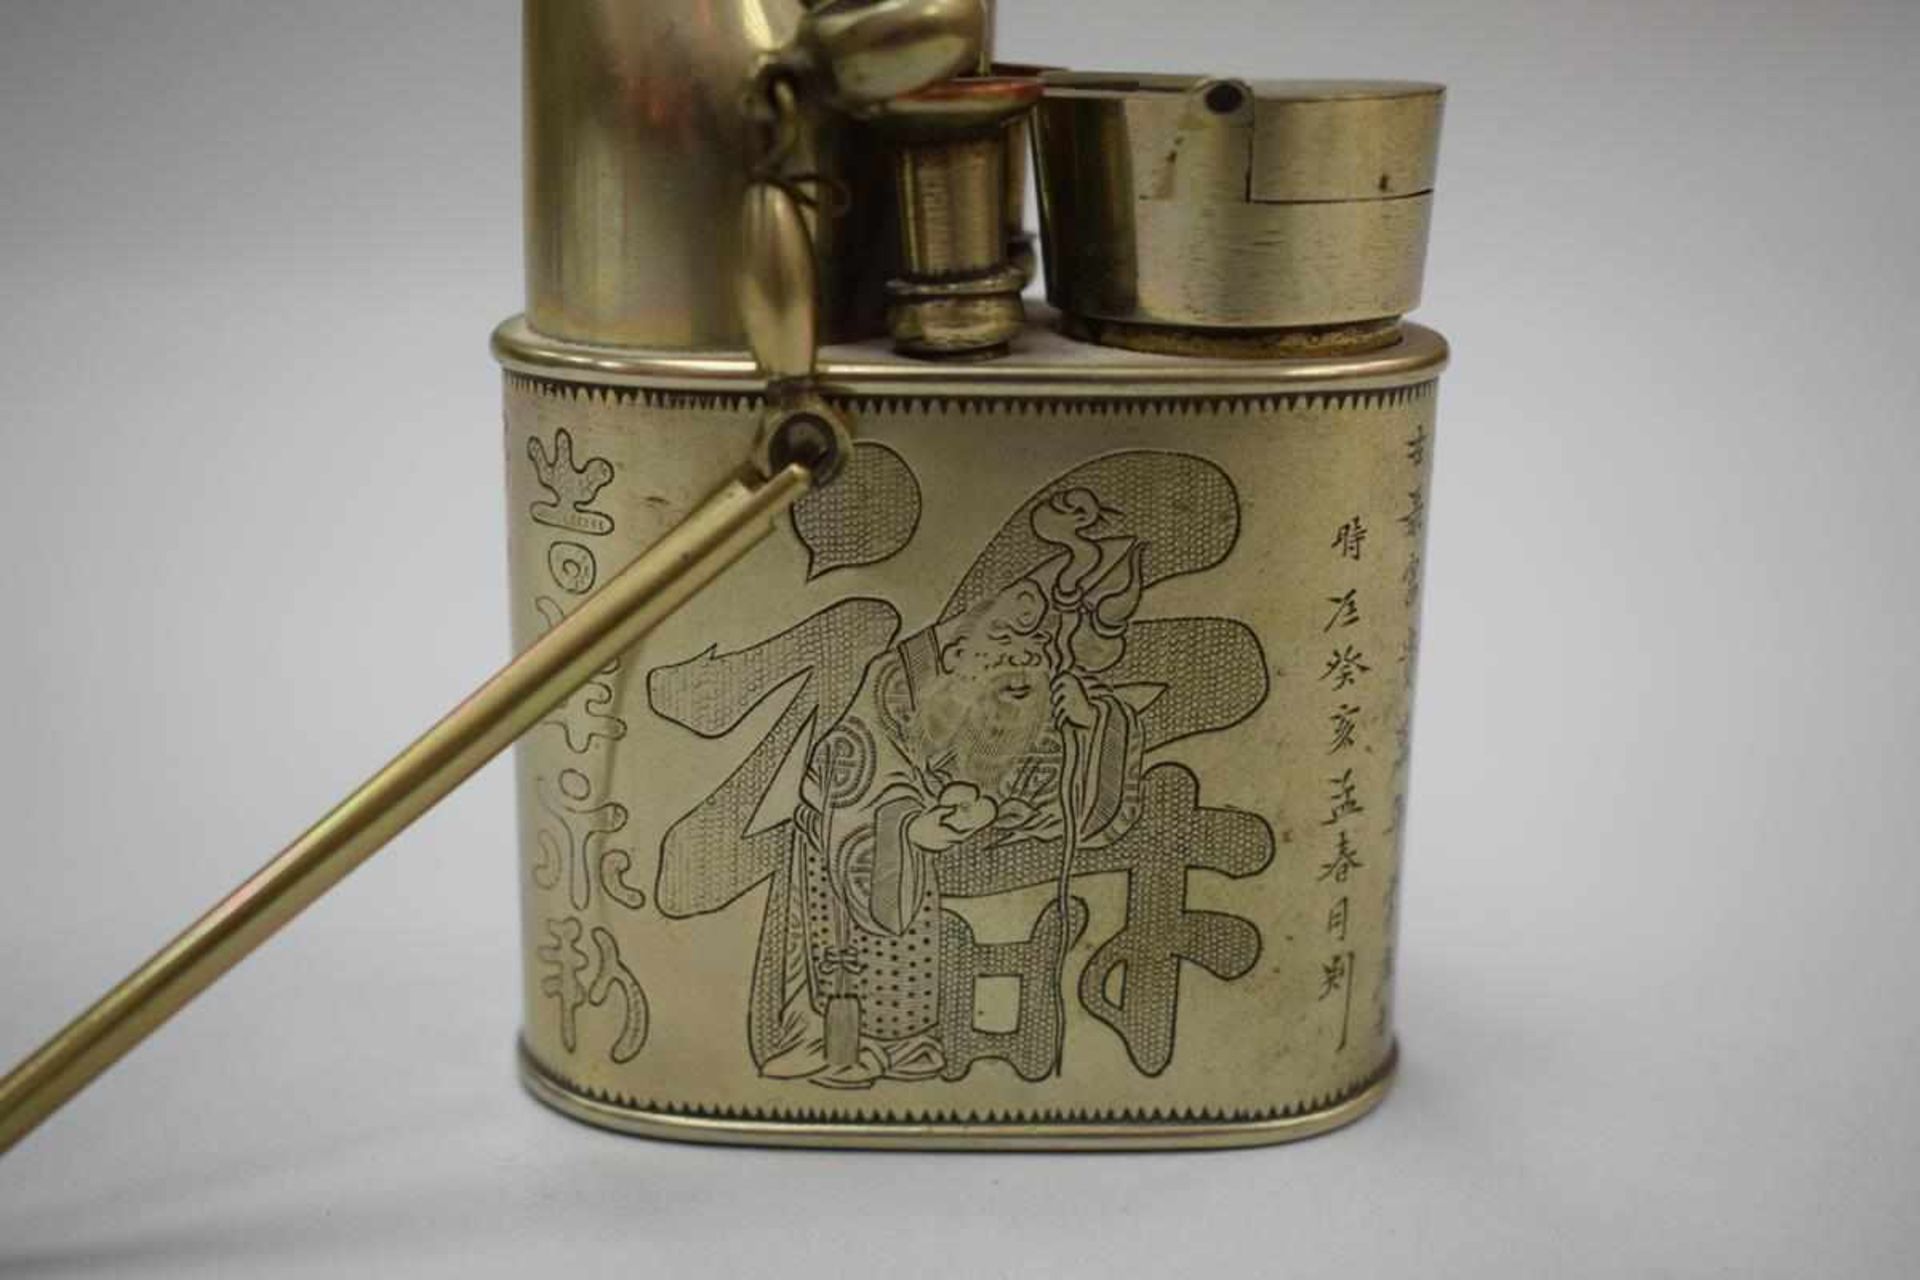 Opiumpfeife China um 1900China um 1900, Opiumpfeife Metall mit figürlicher Darstellung und - Bild 3 aus 5